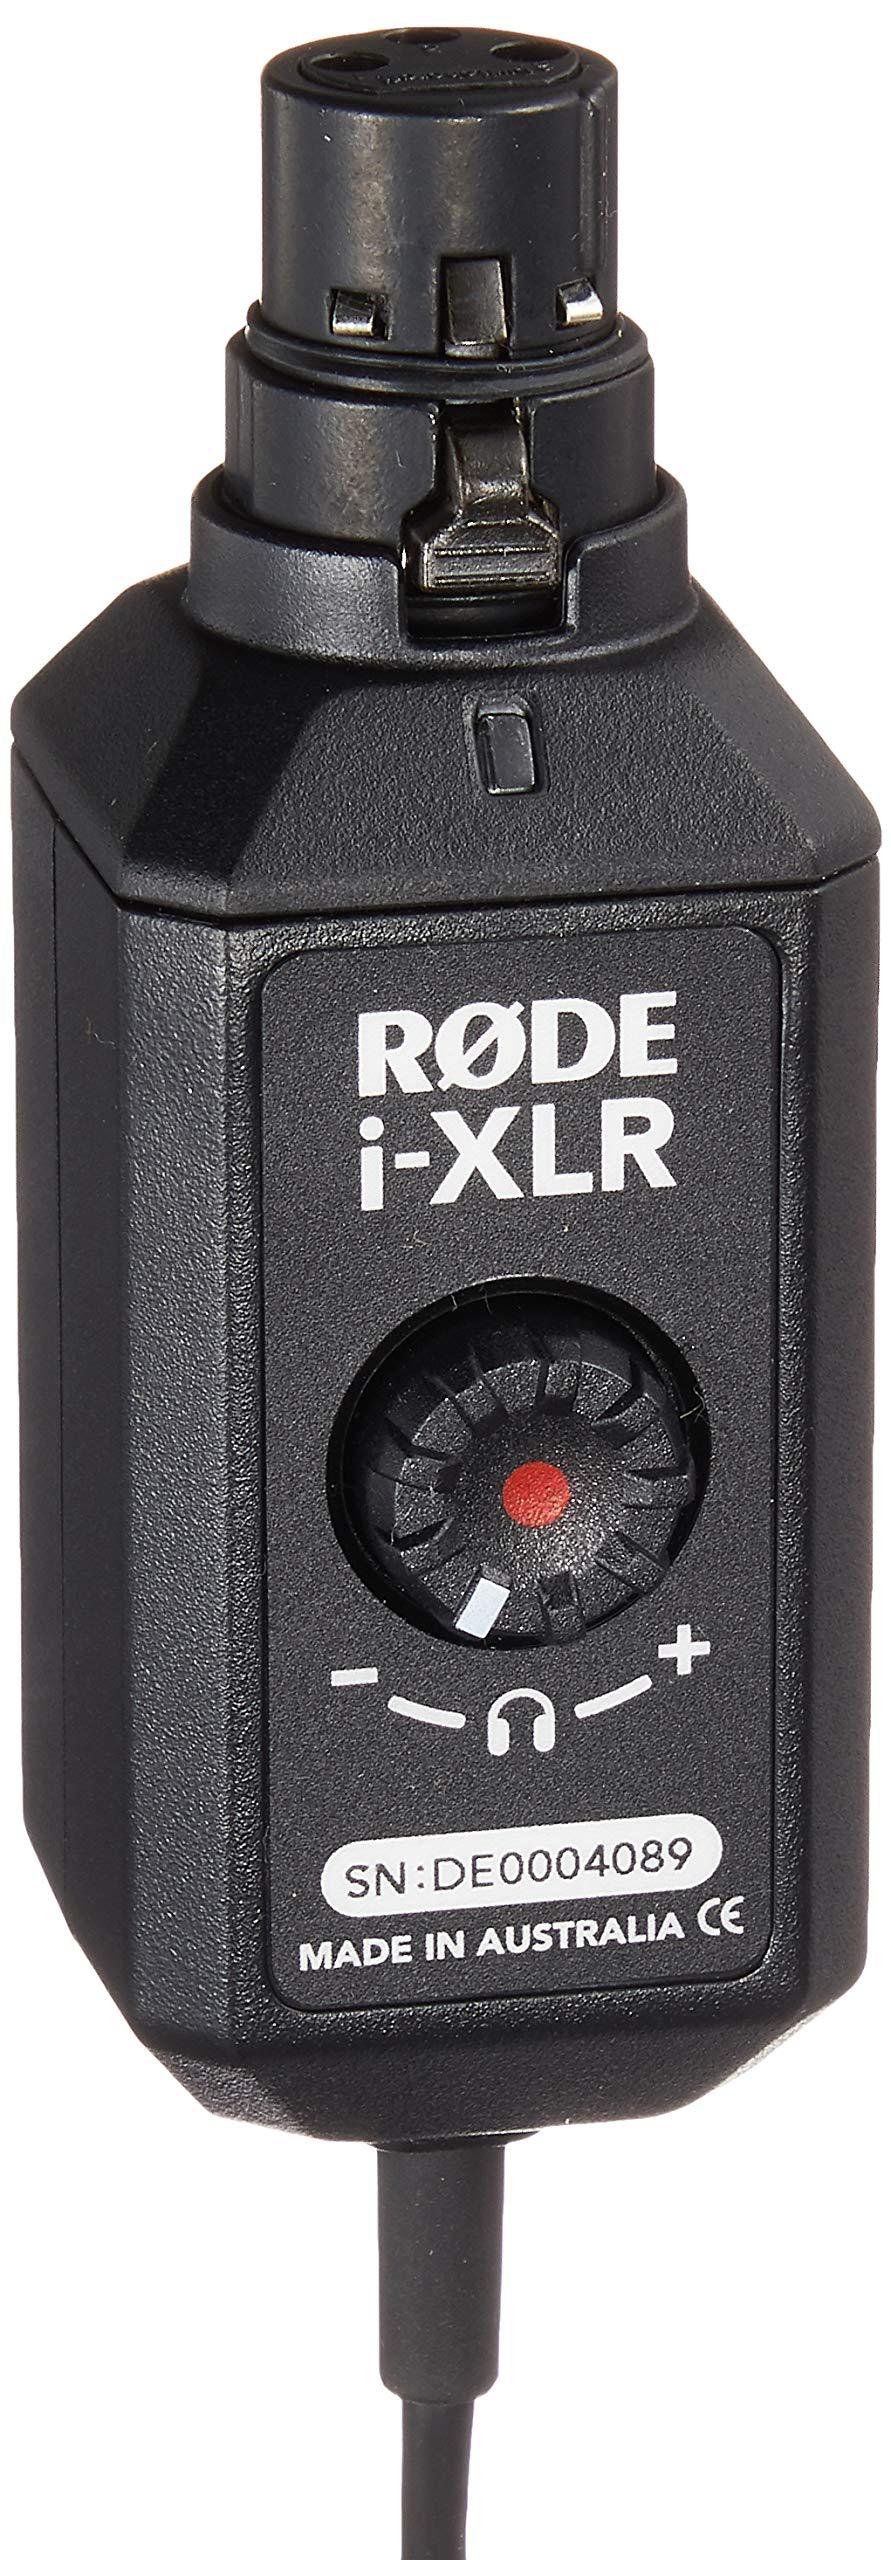 Rode - Interfaz de Audio de Micrófono para iPhone Mod.i-XLR_81